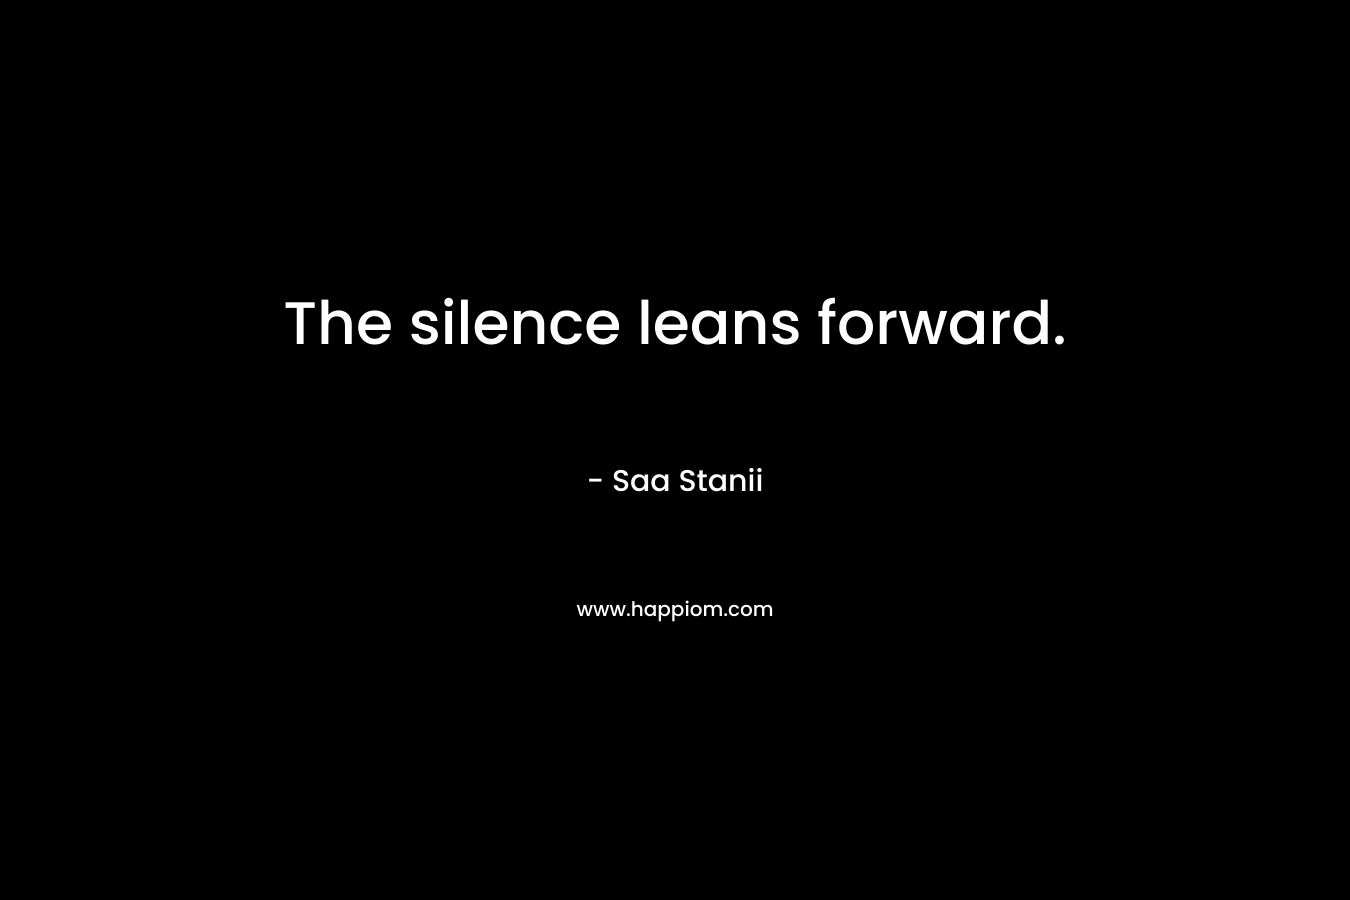 The silence leans forward.